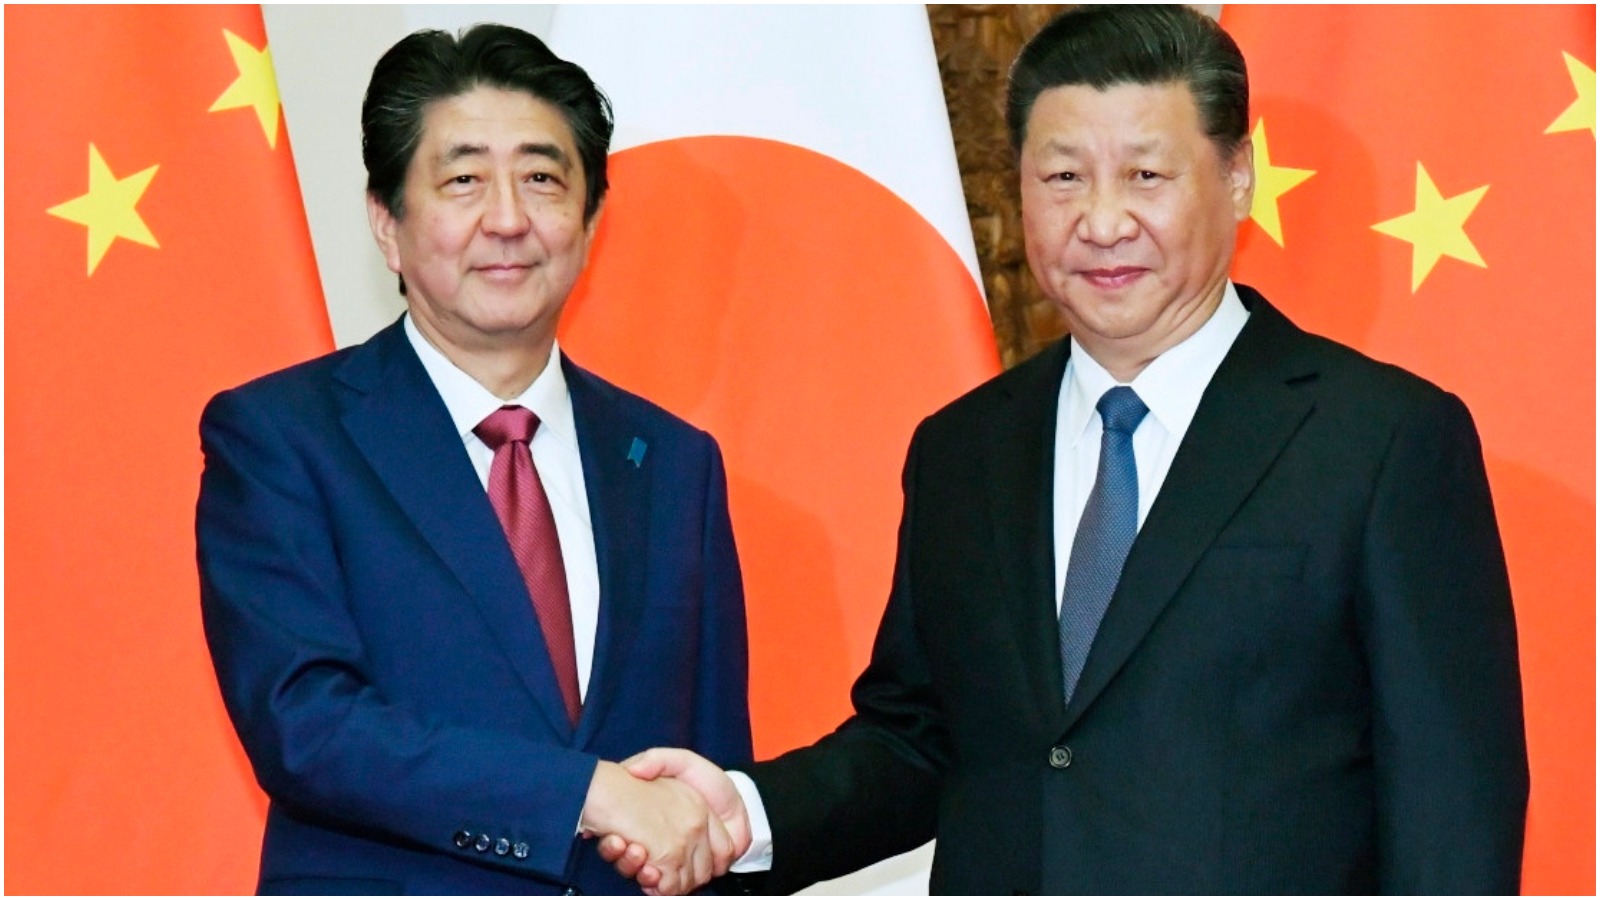 Liselotte Odgaard om mødet mellem Xi Jinping og Shinzo Abe: Kina accepterer omsider Japans udstrakte hånd